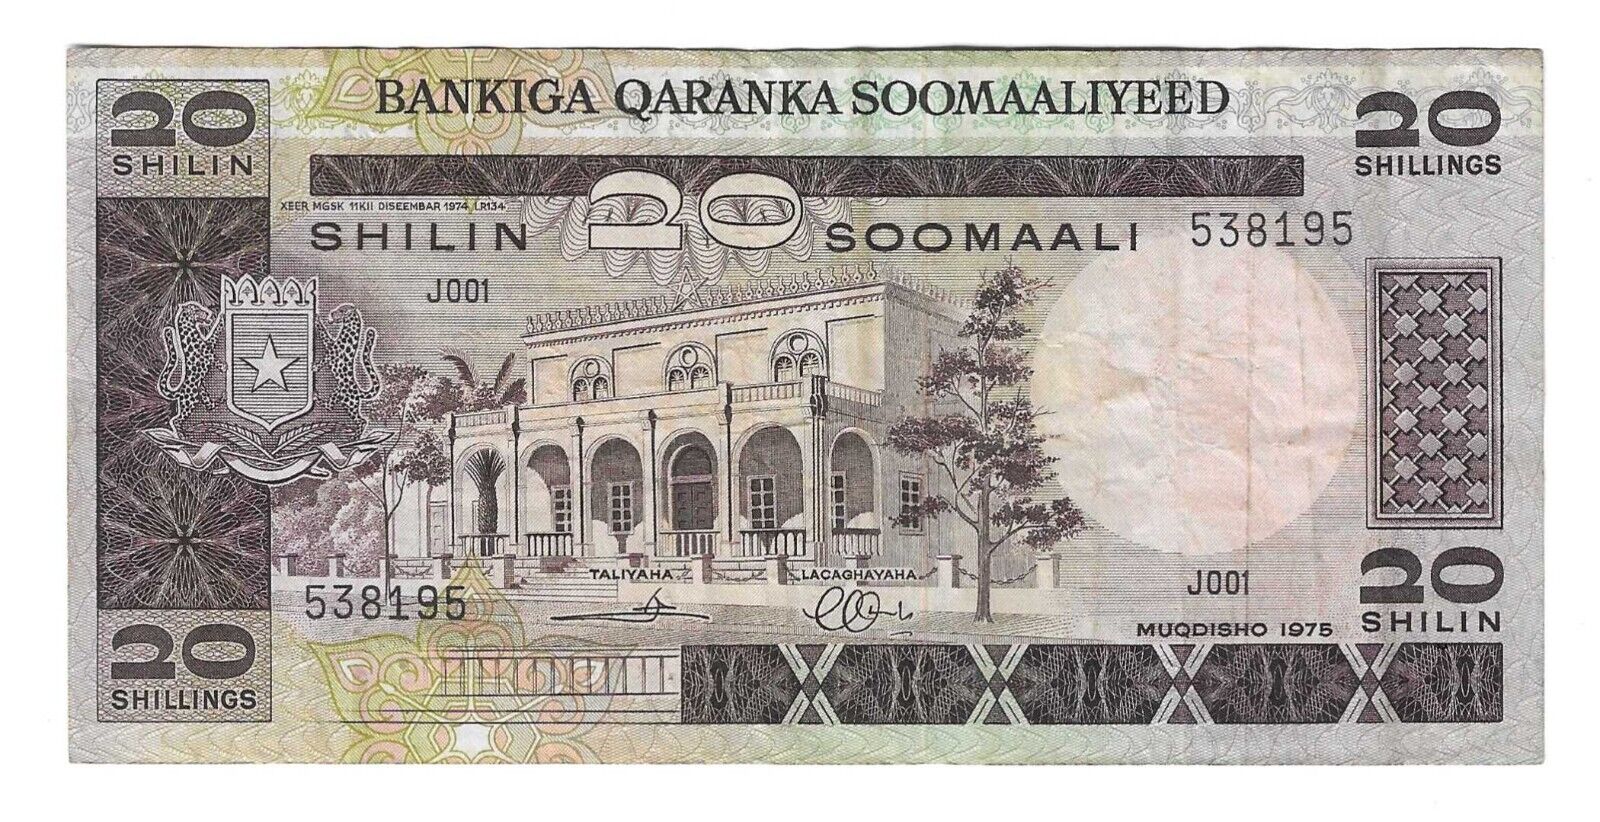 Somalia P-19 20 Shilling 1975 Rare Banknote Nice Condition